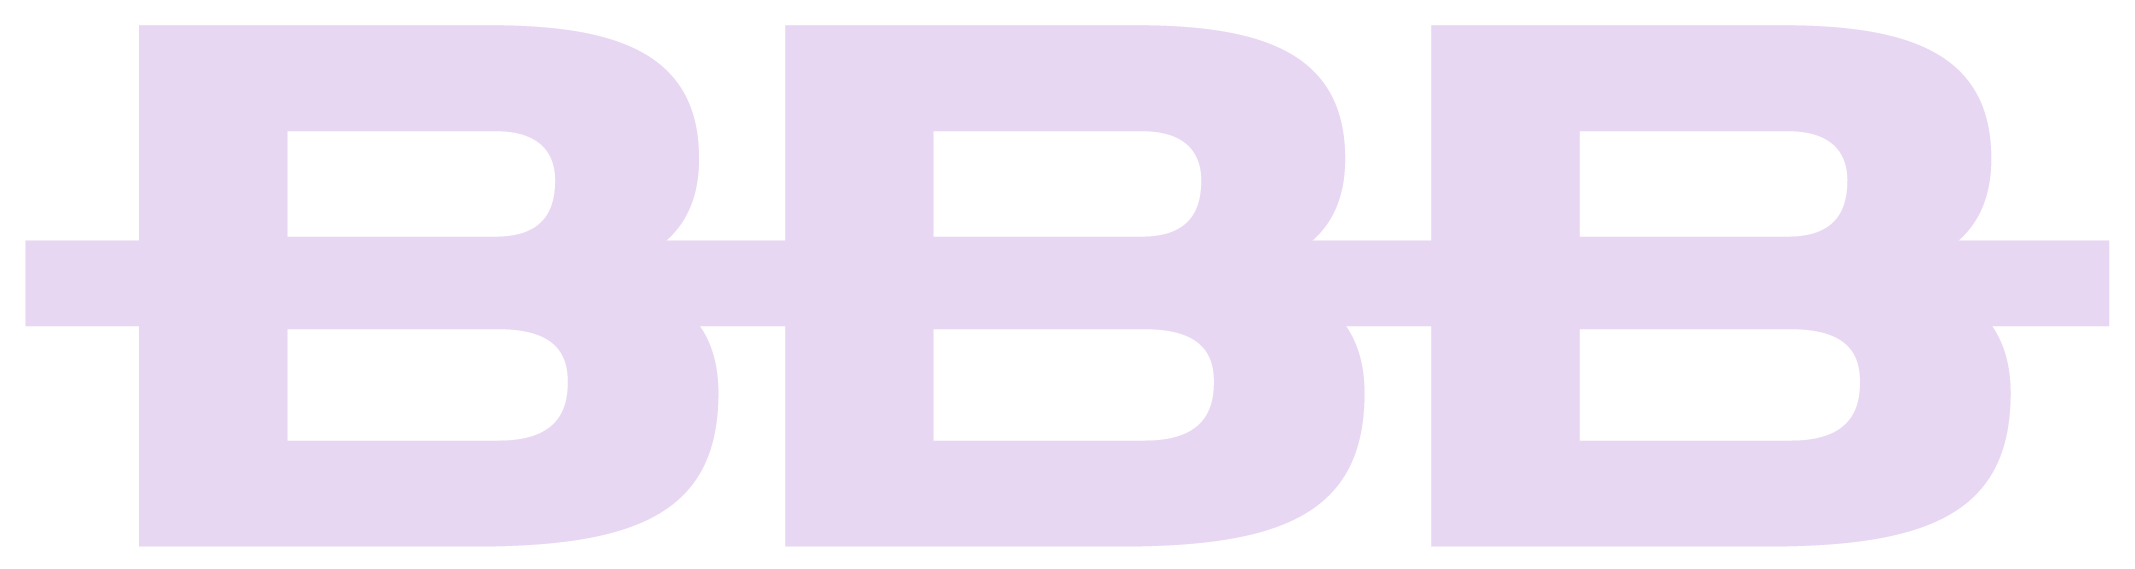 B.B.B